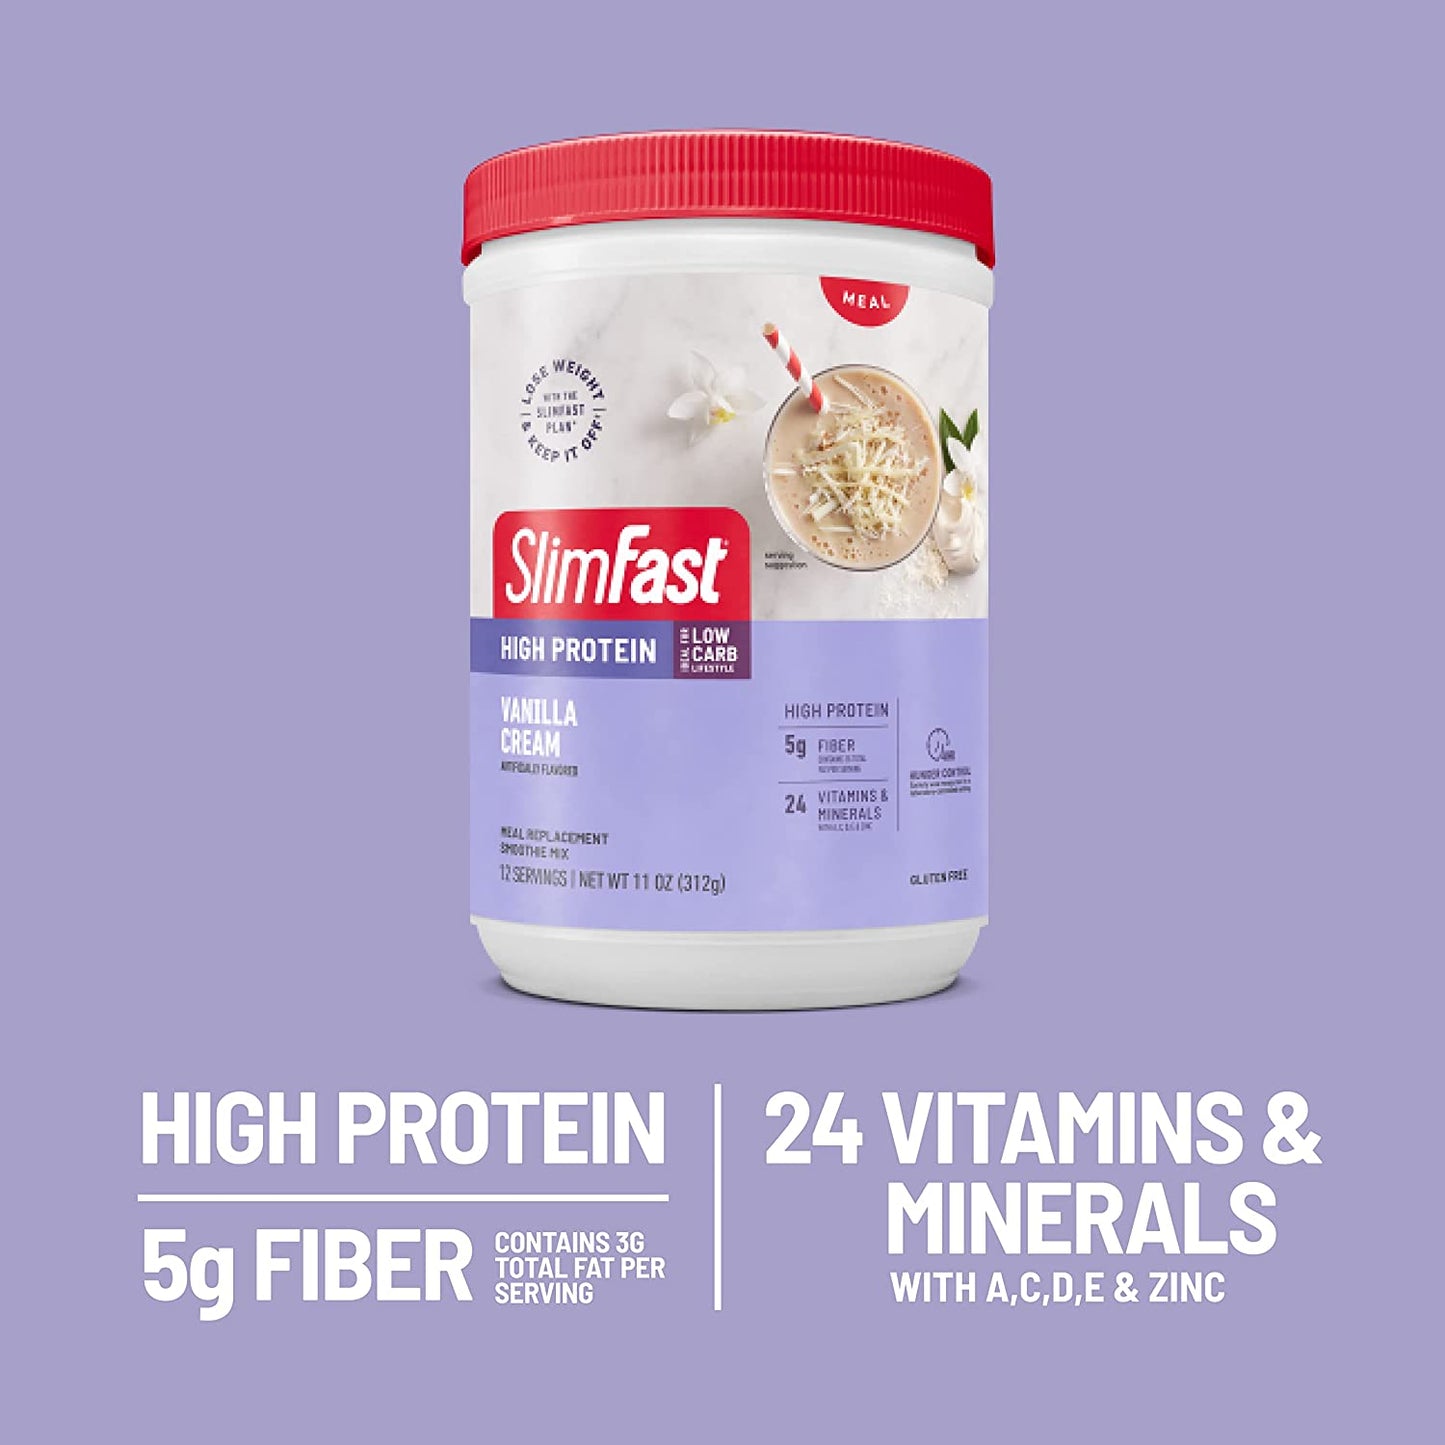 Slimfast Advanced Nutrition Smoothie Mix 20 g High Protein Gluten free Vanilla Cream 11 Oz 312g